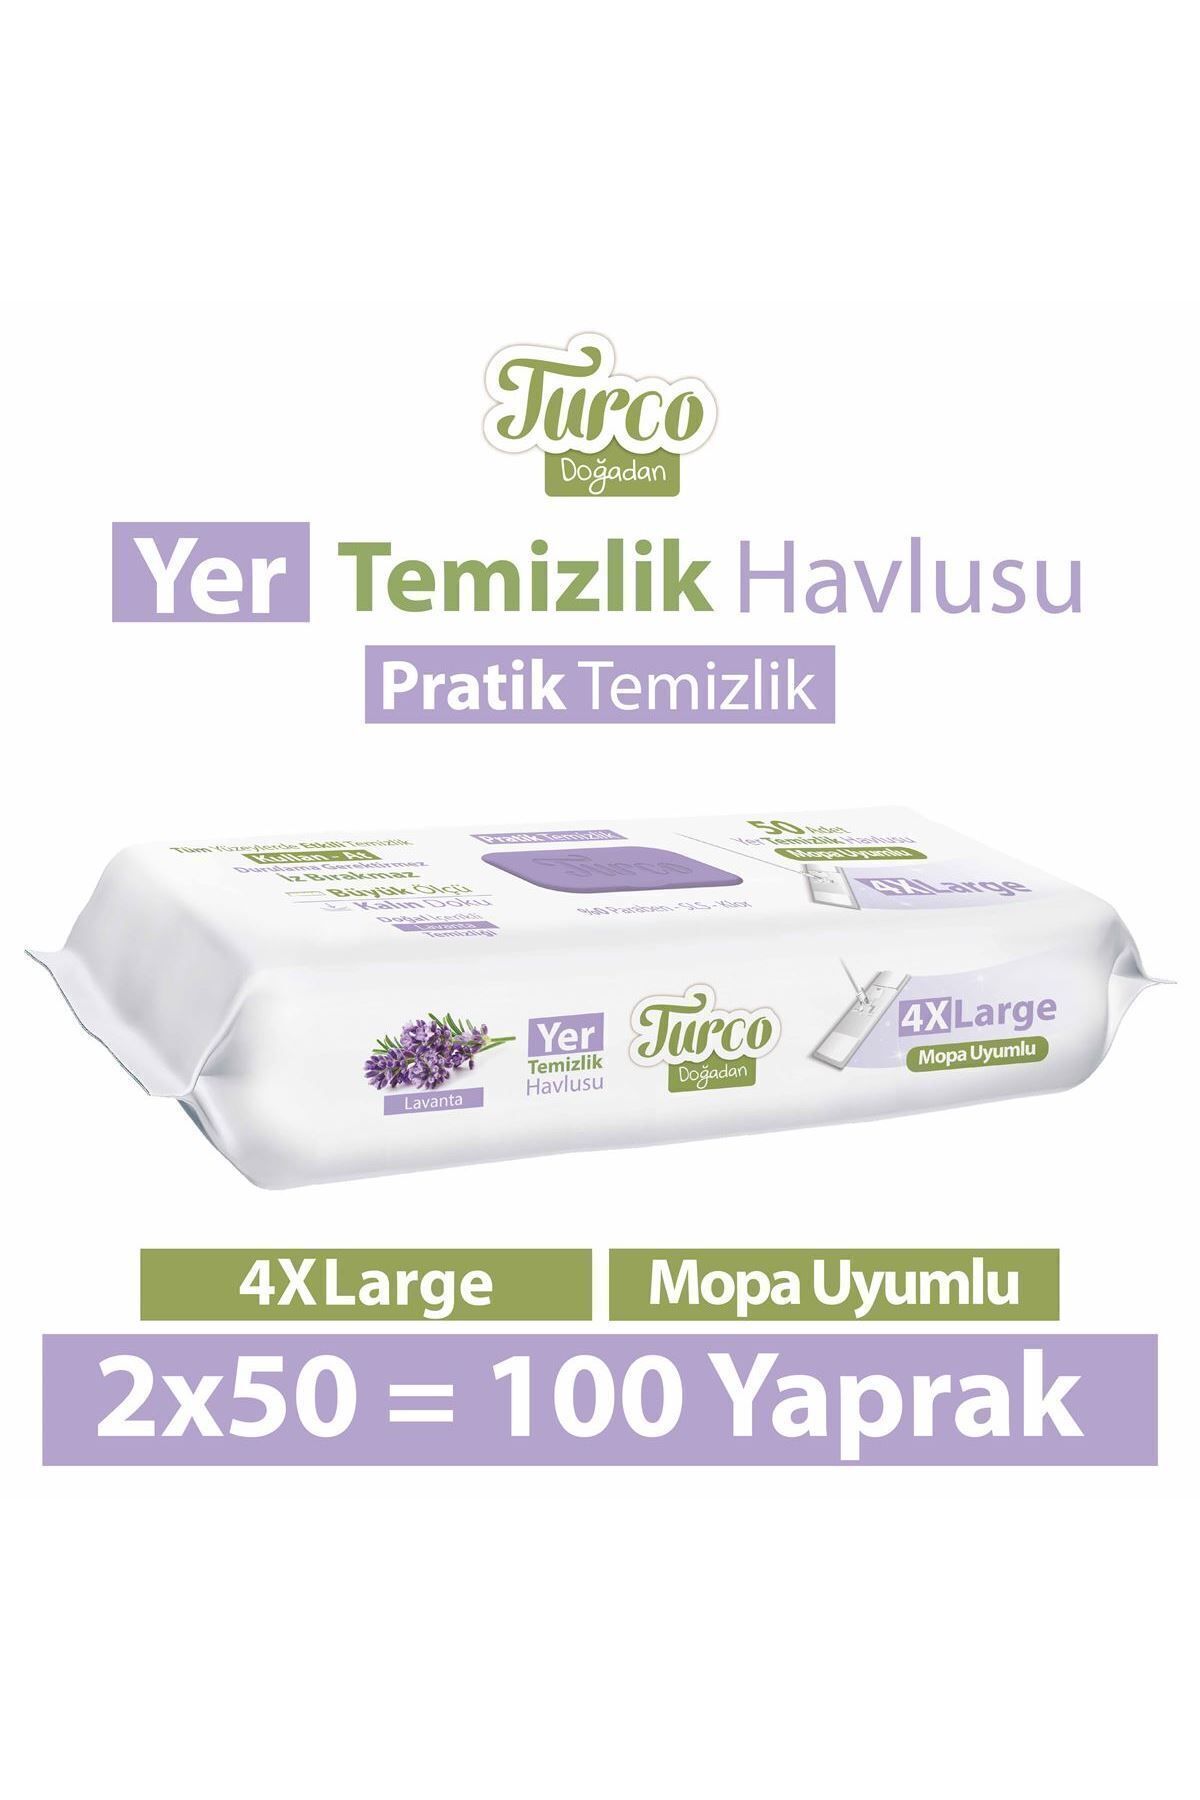 Turco Doğadan Pratik Temizlik Turco Doğadan Yer Temizlik Havlusu Lavanta 2X50(100 Yaprak)